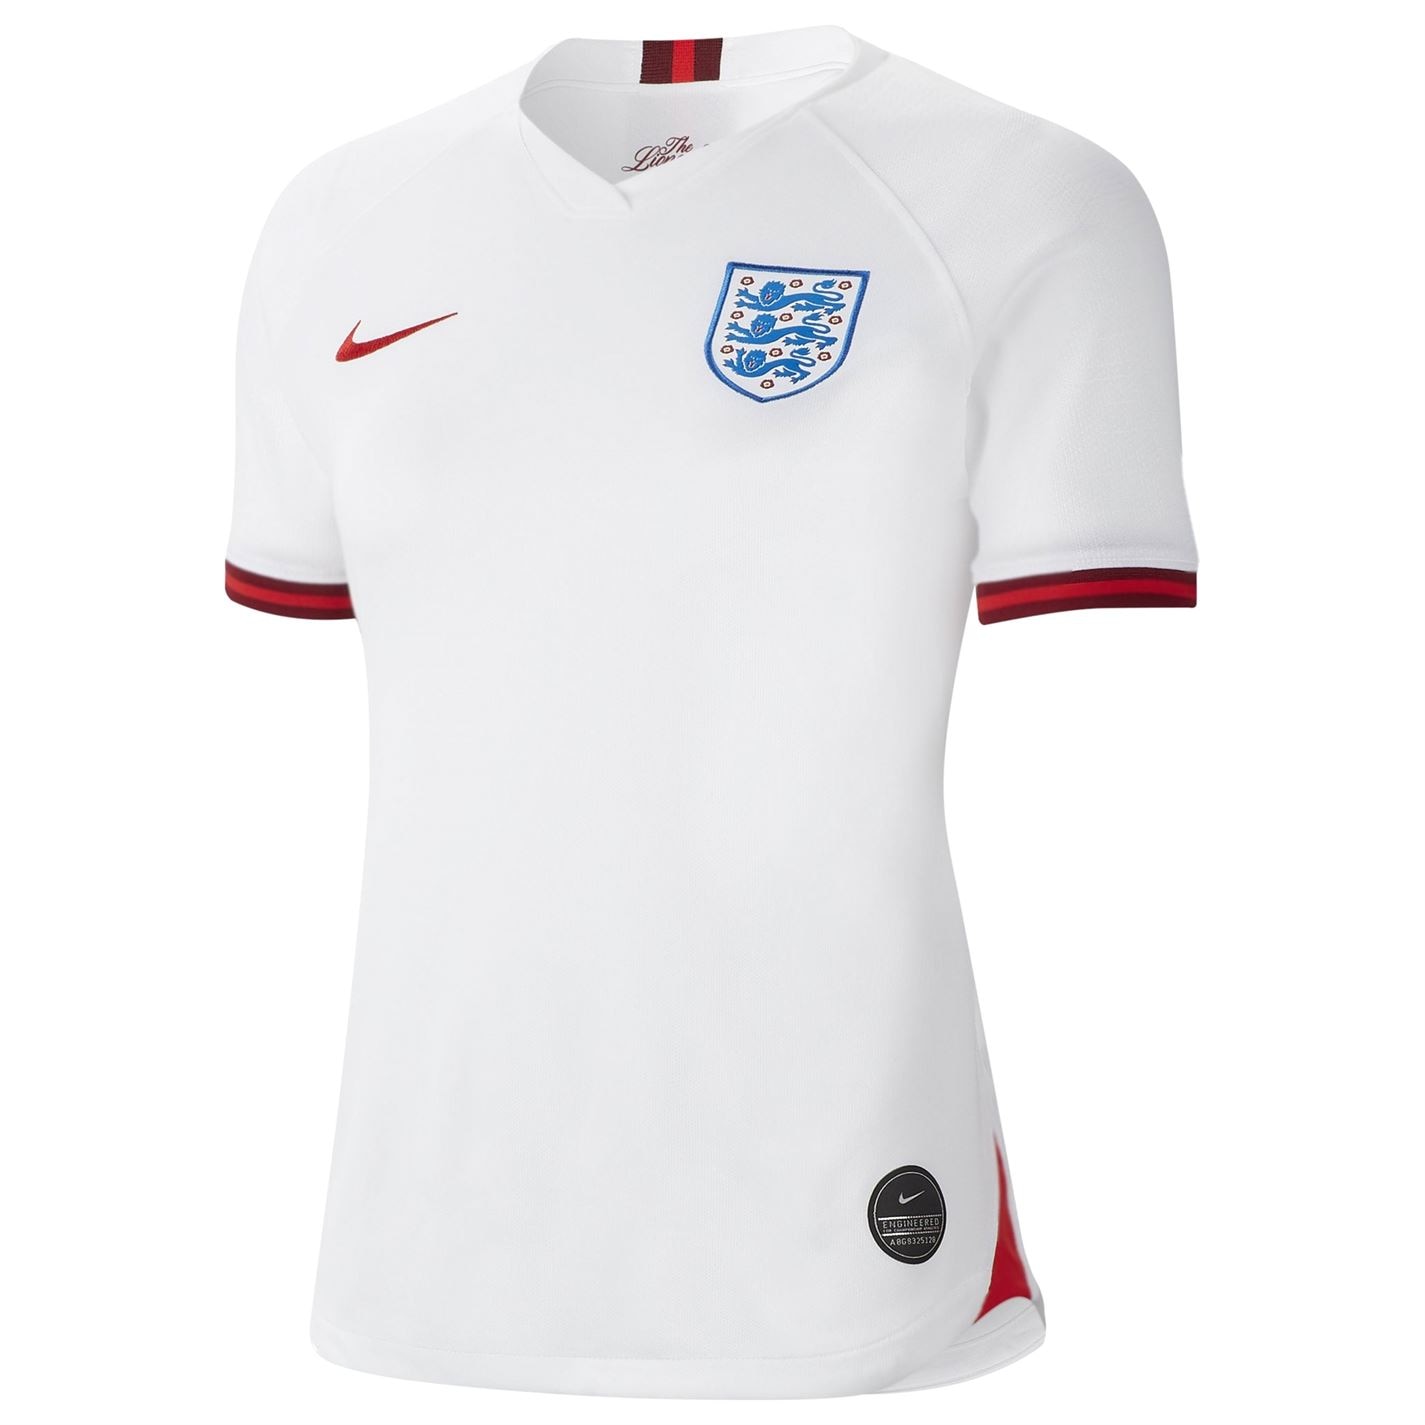 Tricou Acasa Nike England World Cup 2019 pentru Femei pentru femei